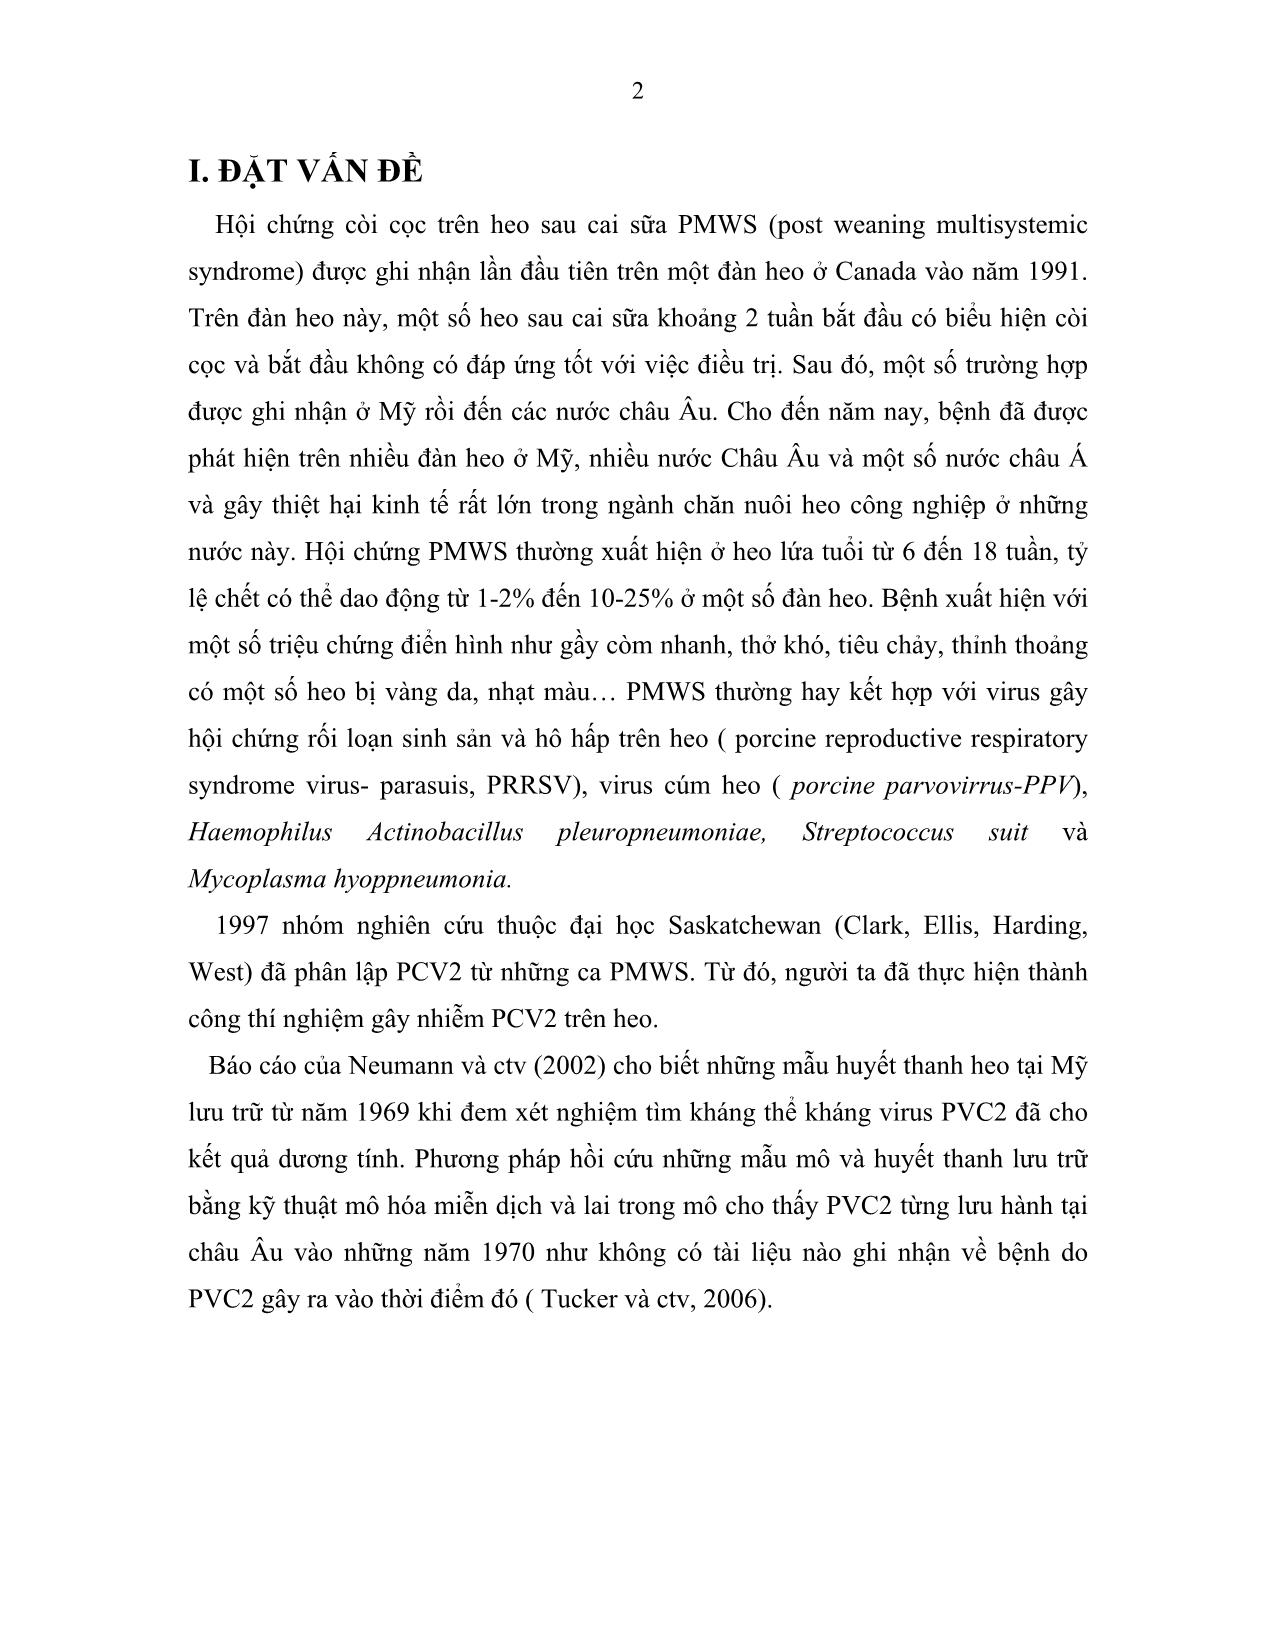 Tiểu luận Chẩn đoán virus pmws (procine multisystemic wasting syndrom) bằng kỹ thuật gene trang 2